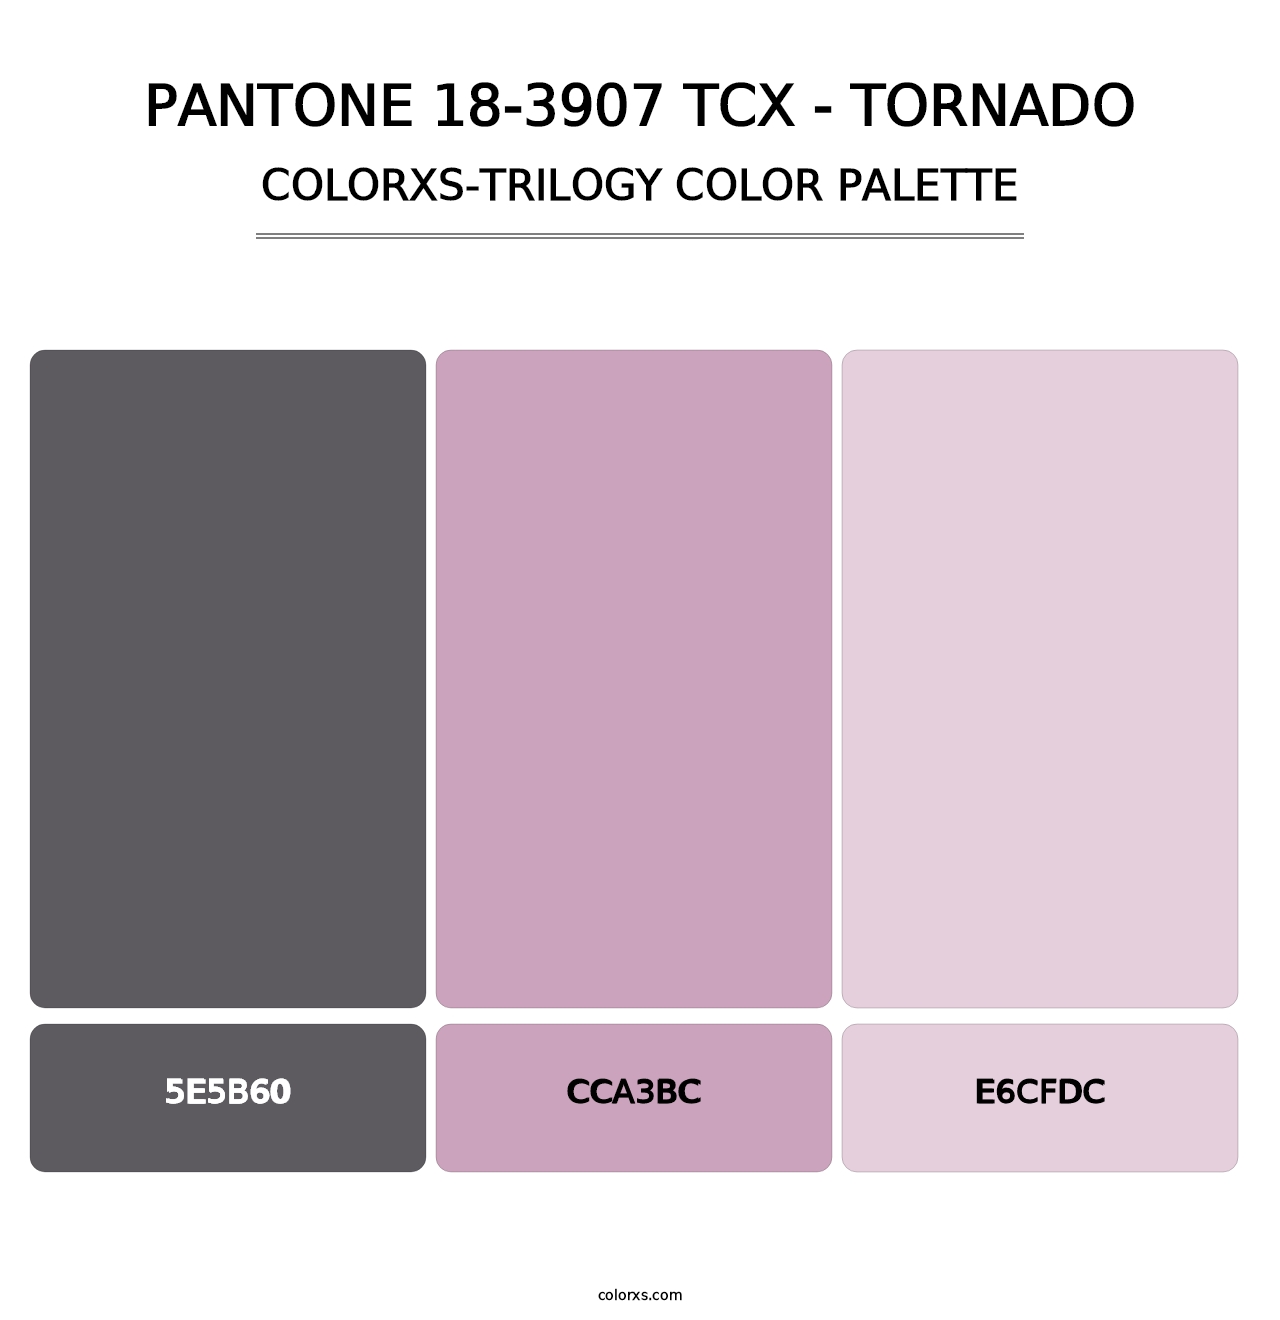 PANTONE 18-3907 TCX - Tornado - Colorxs Trilogy Palette